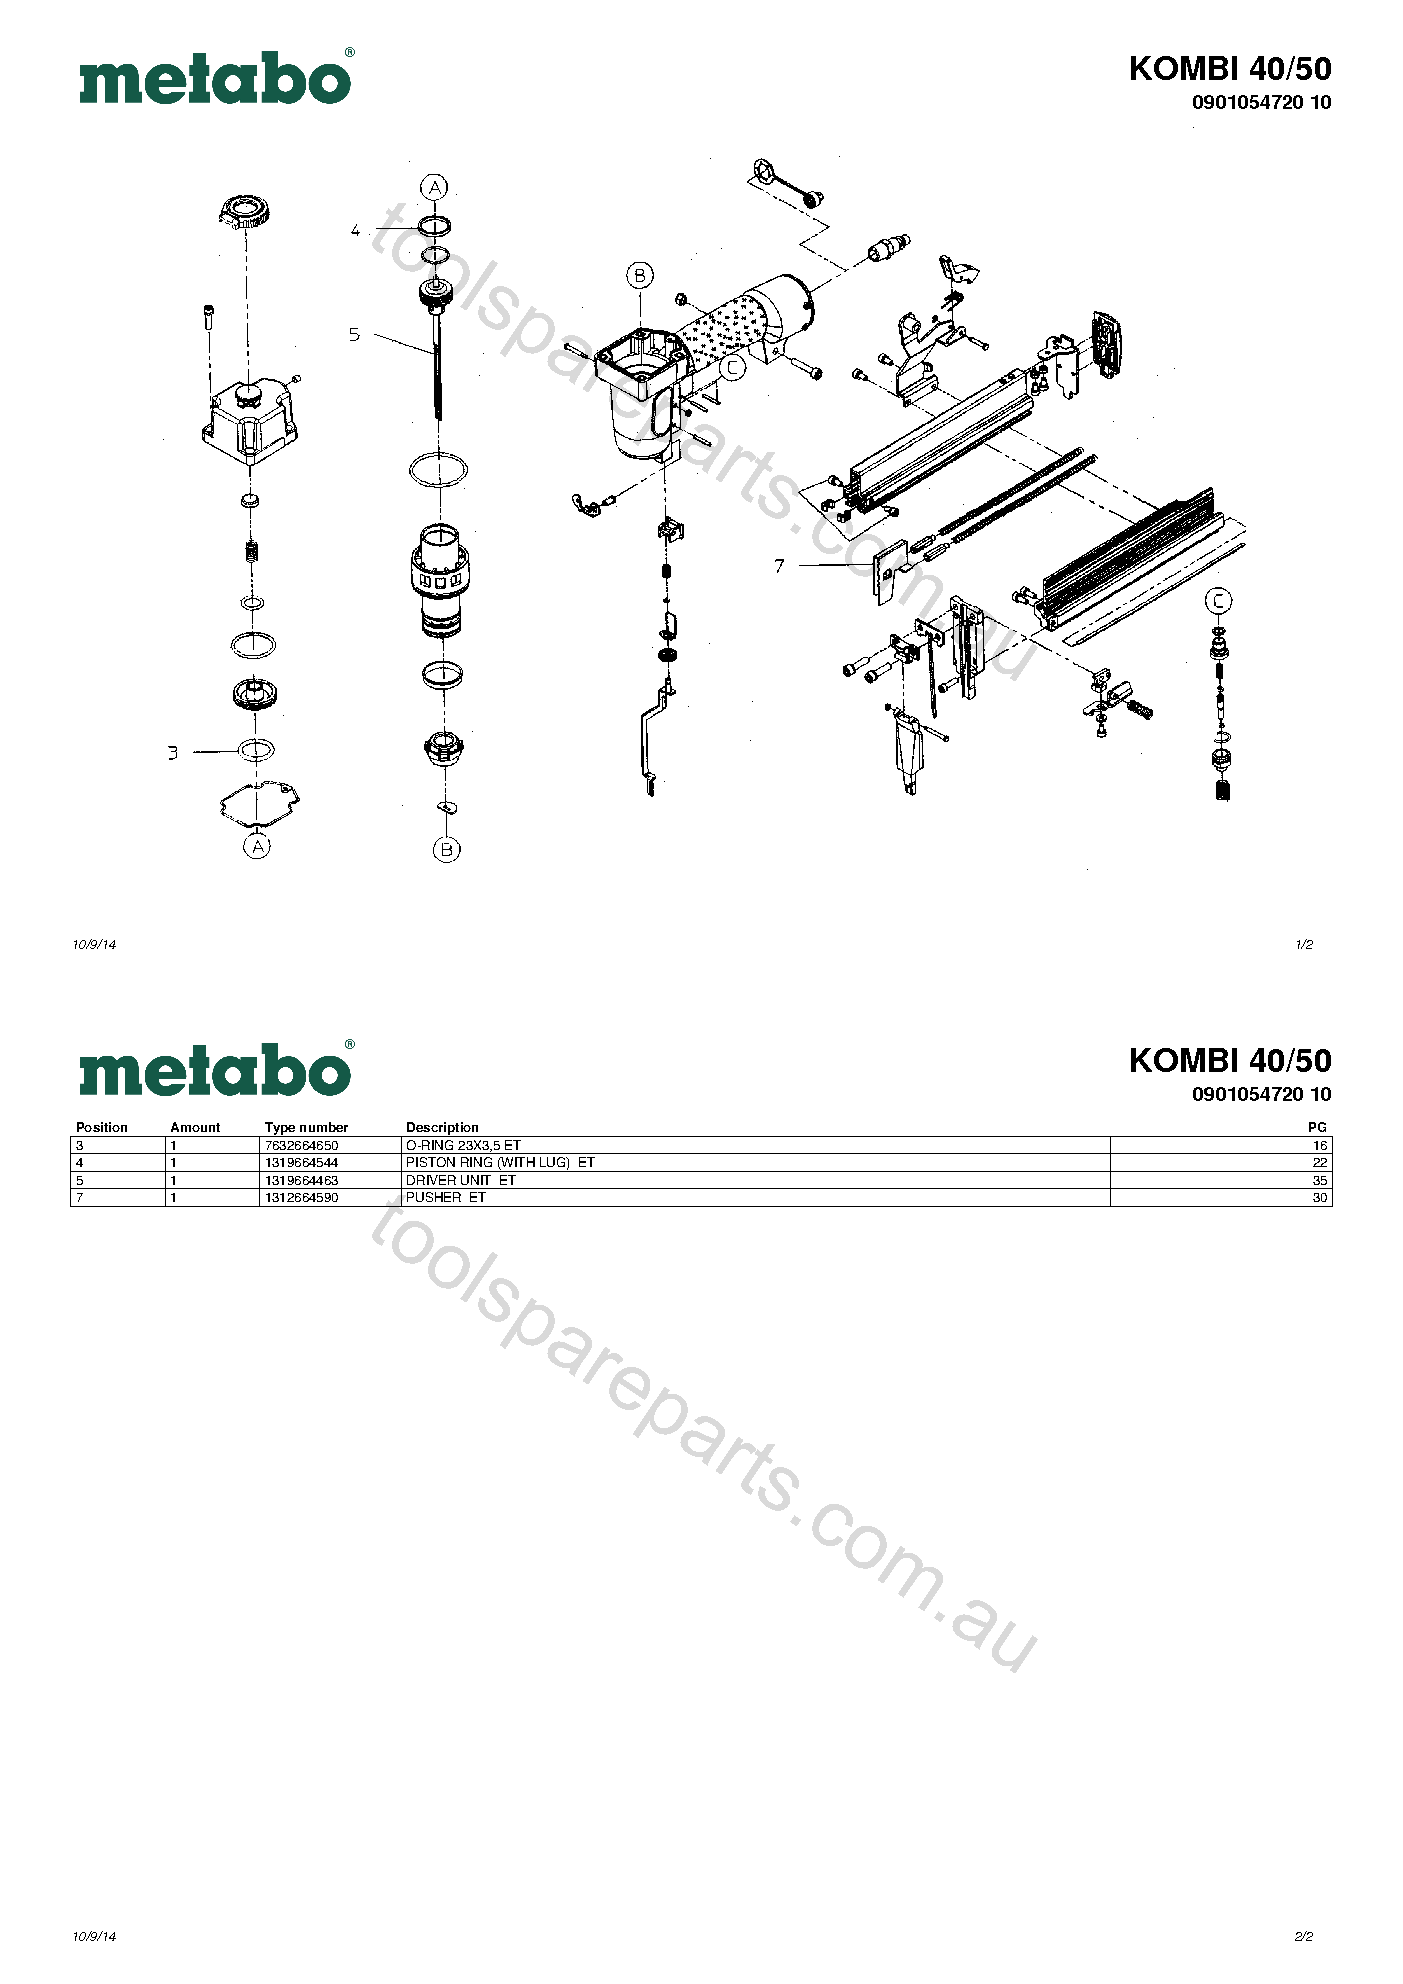 Metabo KOMBI 40/50 0901054720 10  Diagram 1